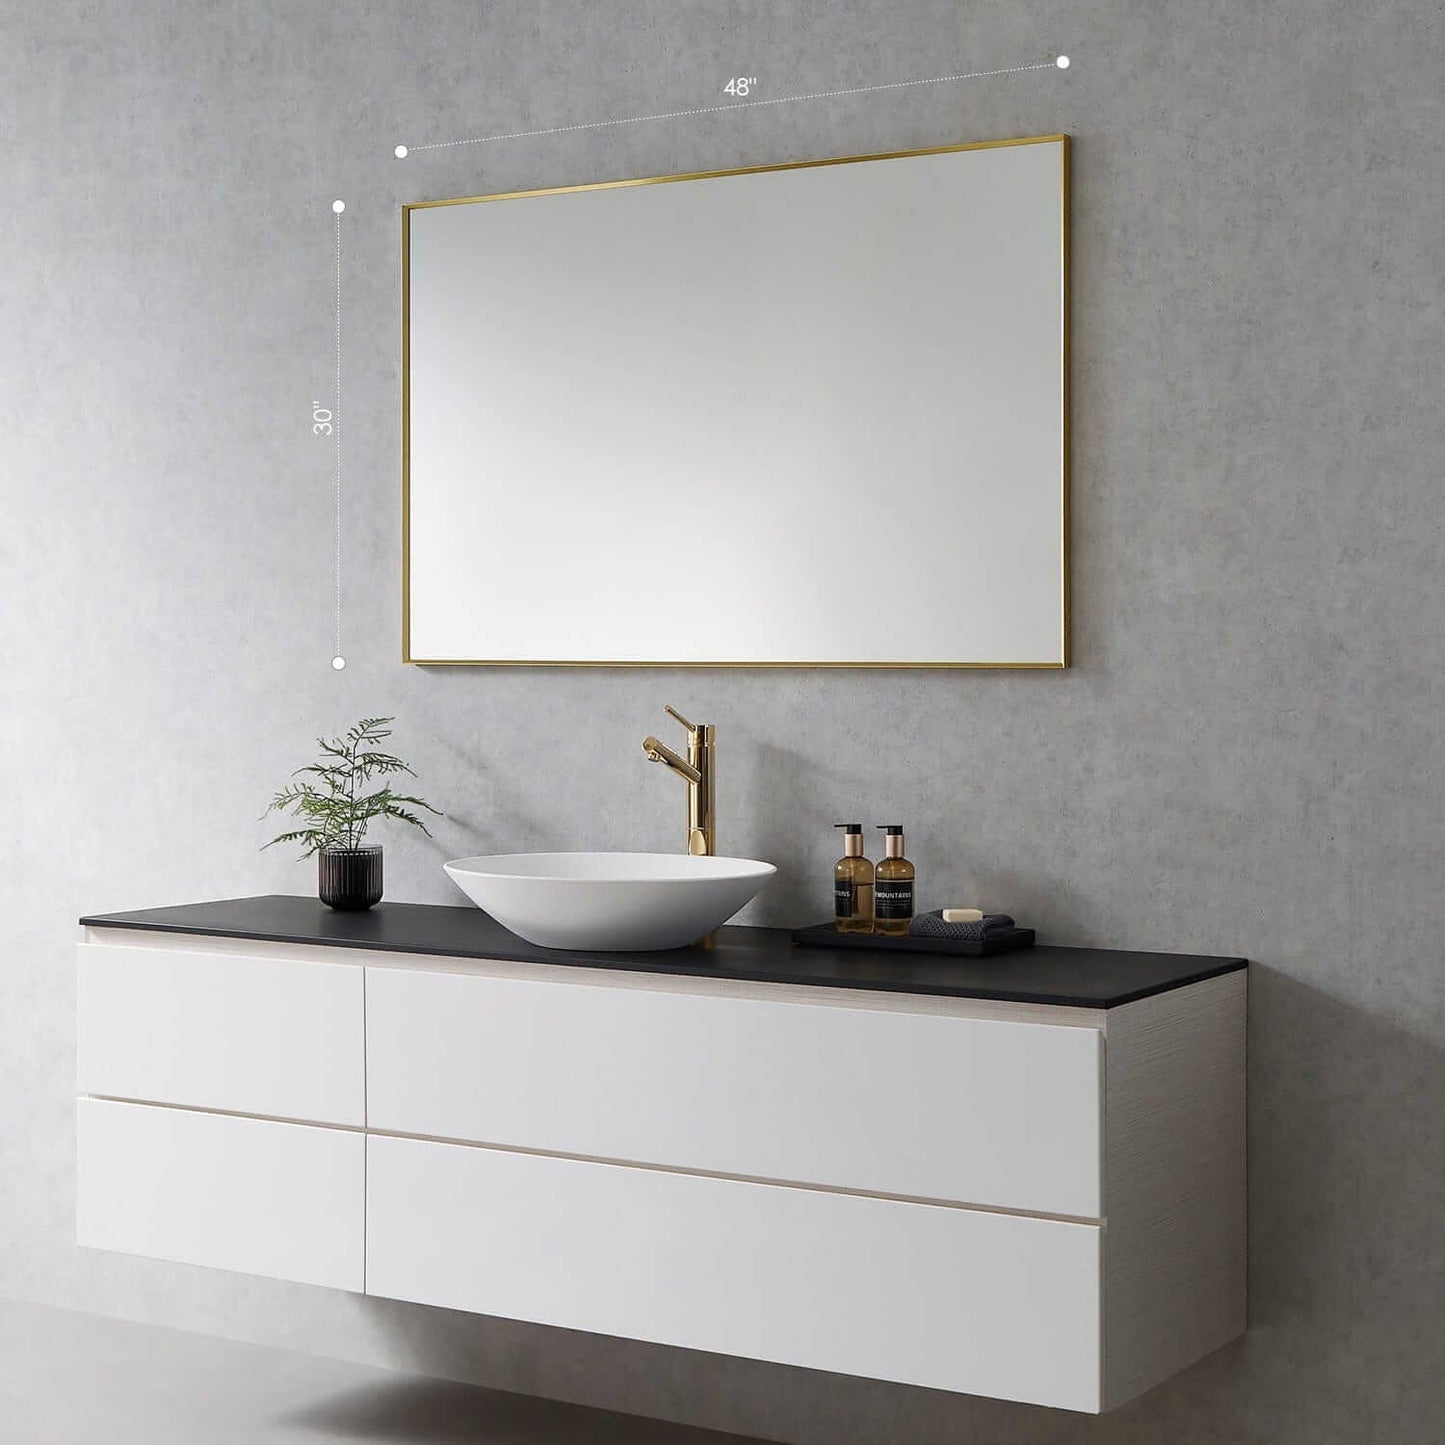 Bathroom Mirror - Altair Sassi 48W x 30H - 755024-MIR-GF